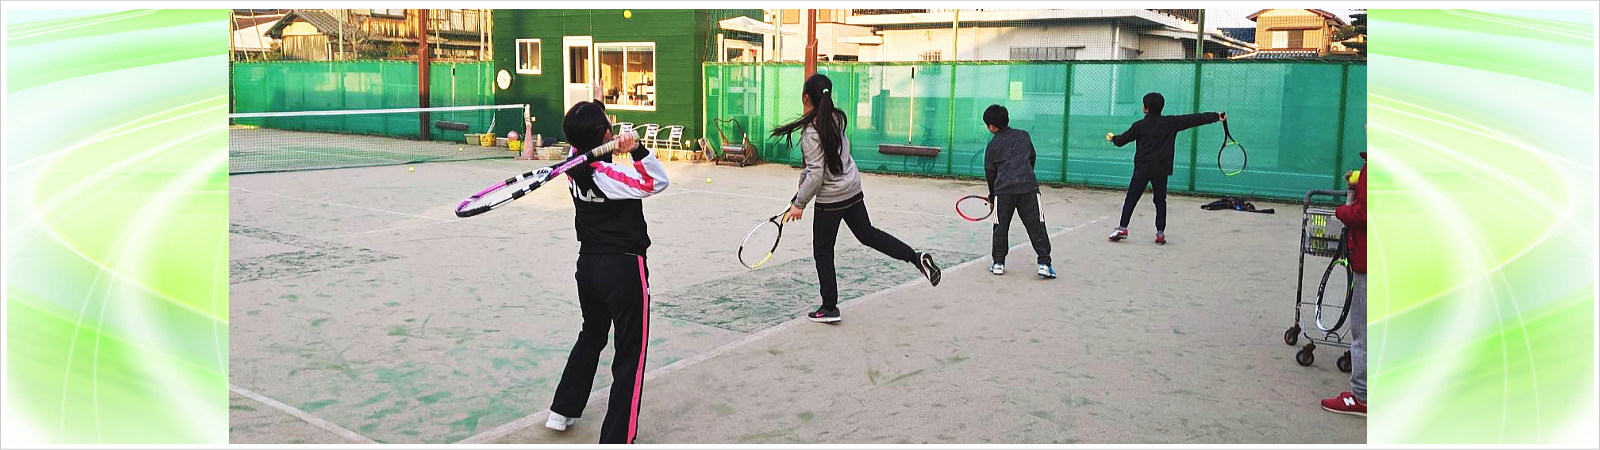 大園テニスワールド|三重県津市|誰もが無理せずテニスをいつまでも楽しめるように導きます